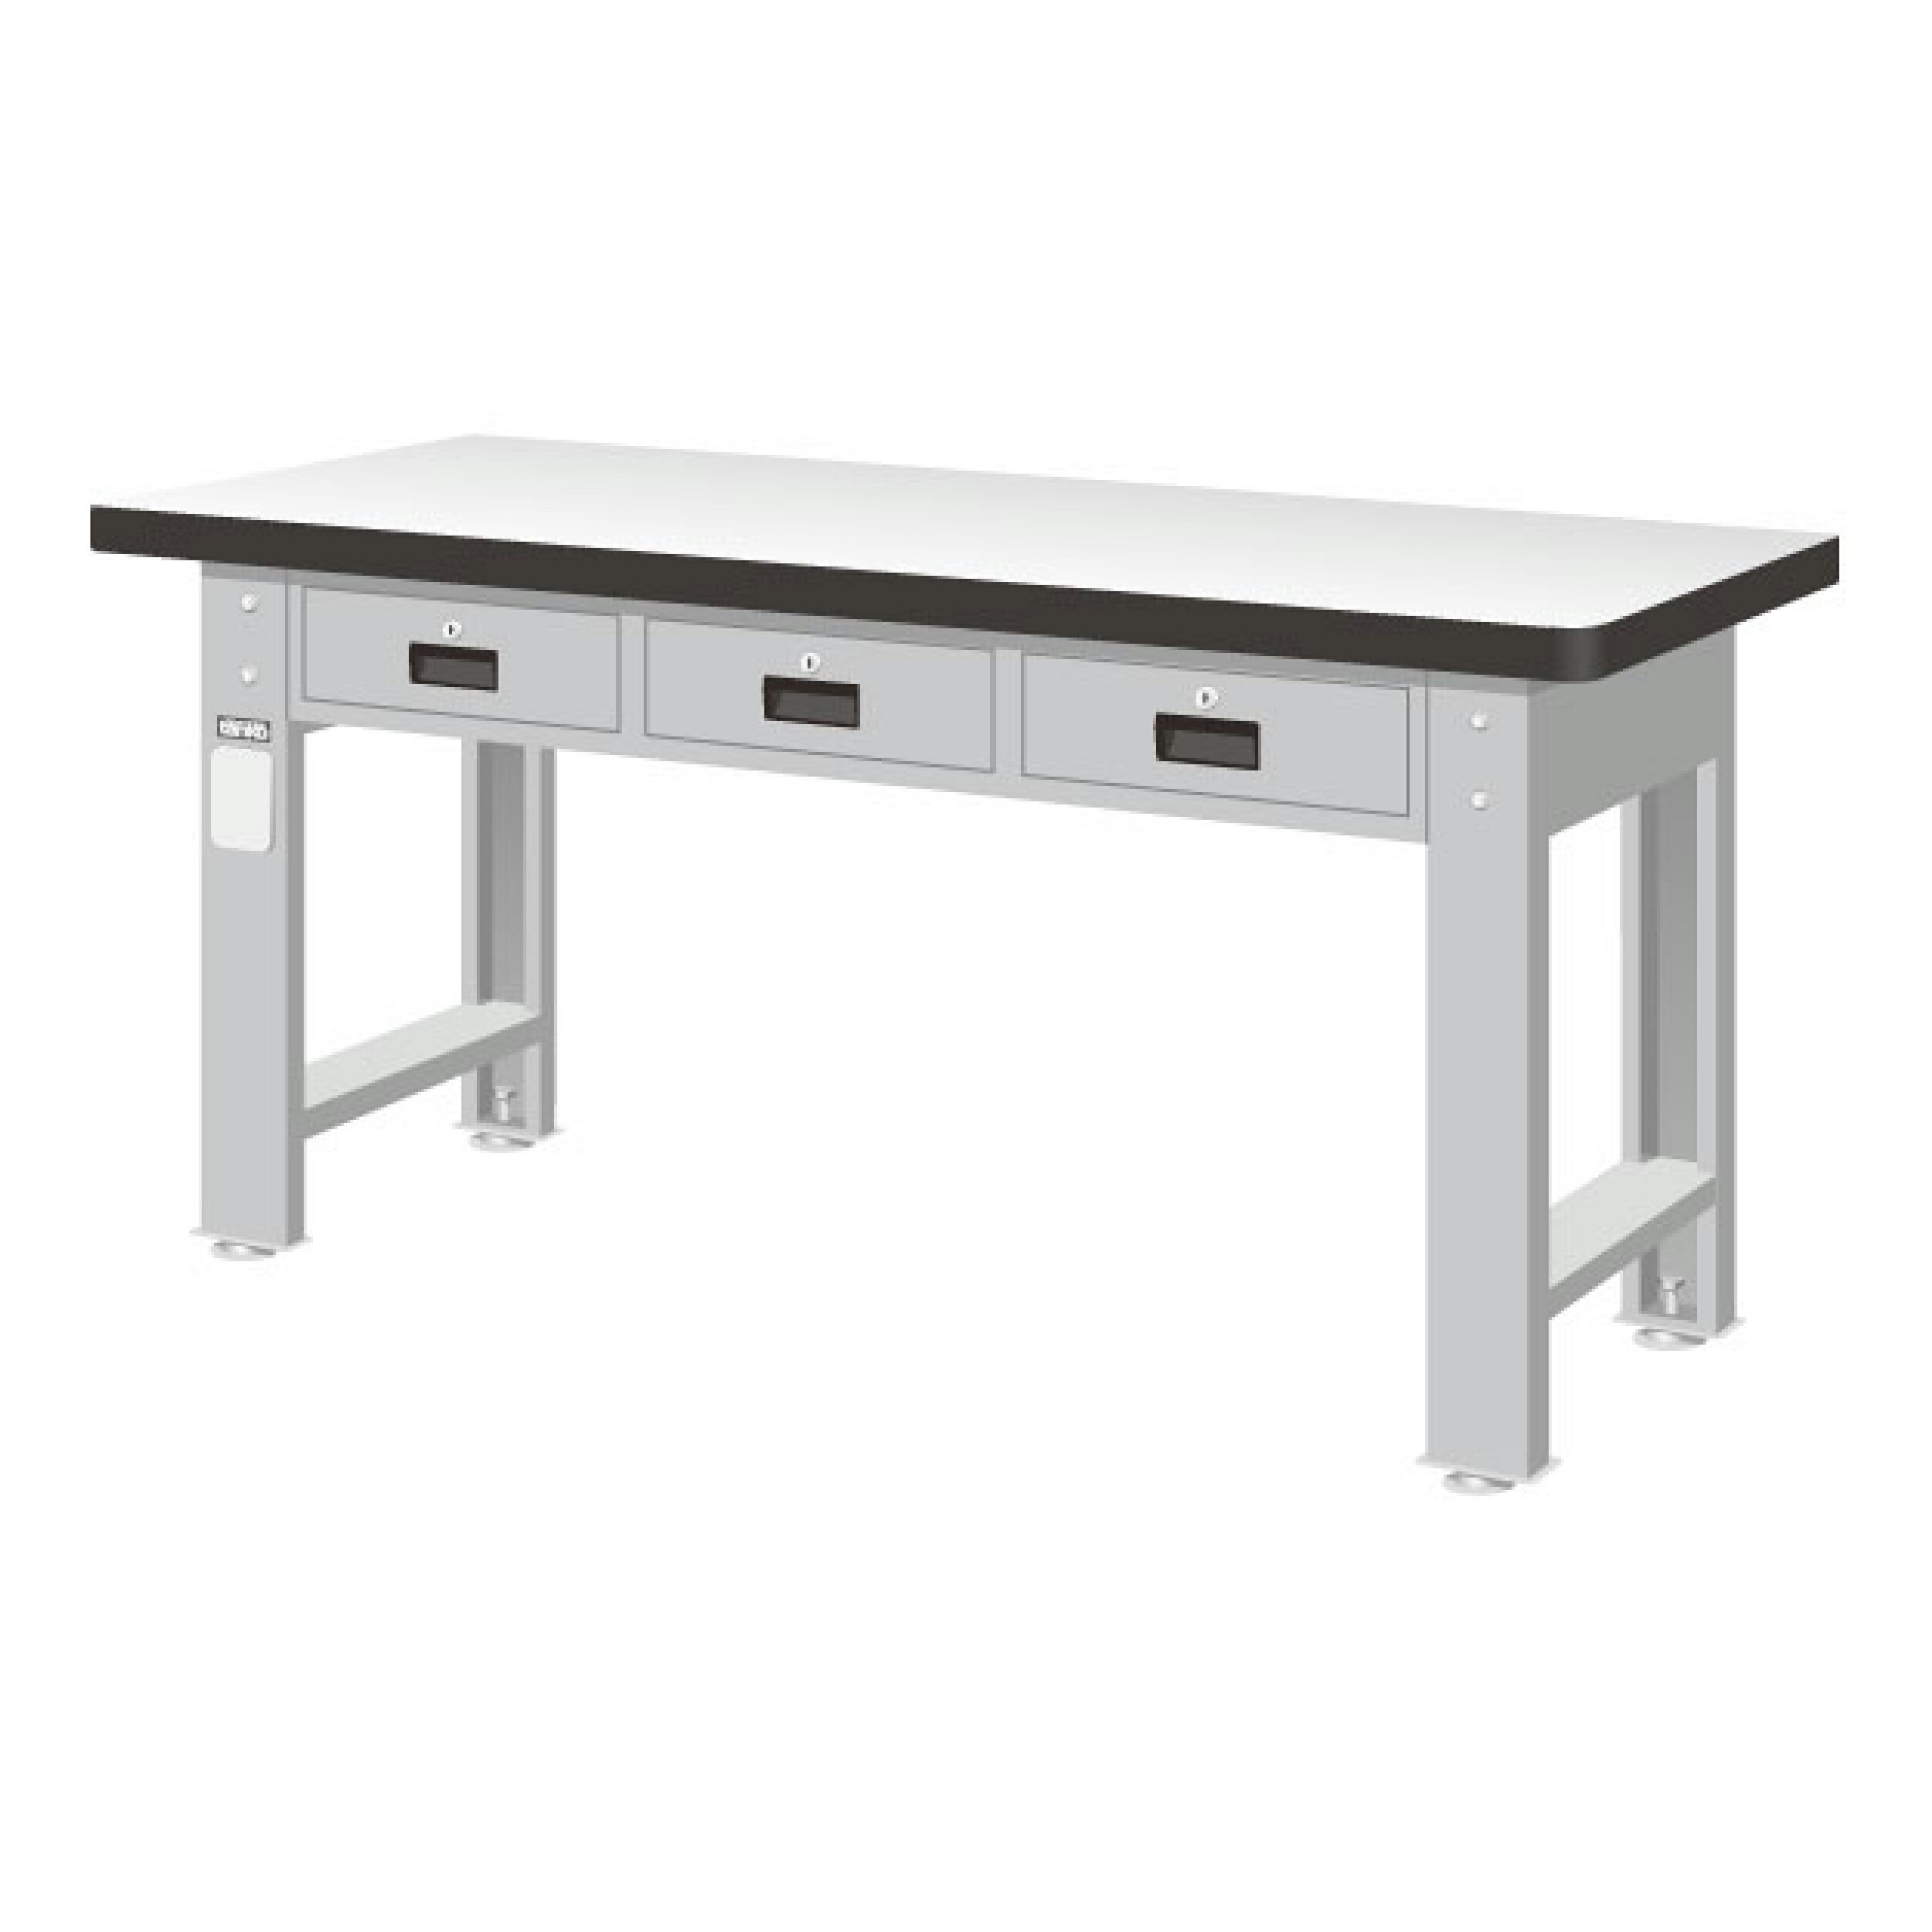 TANKO 重量型工作桌 耐磨桌板 WAT-5203F (橫三屜型)